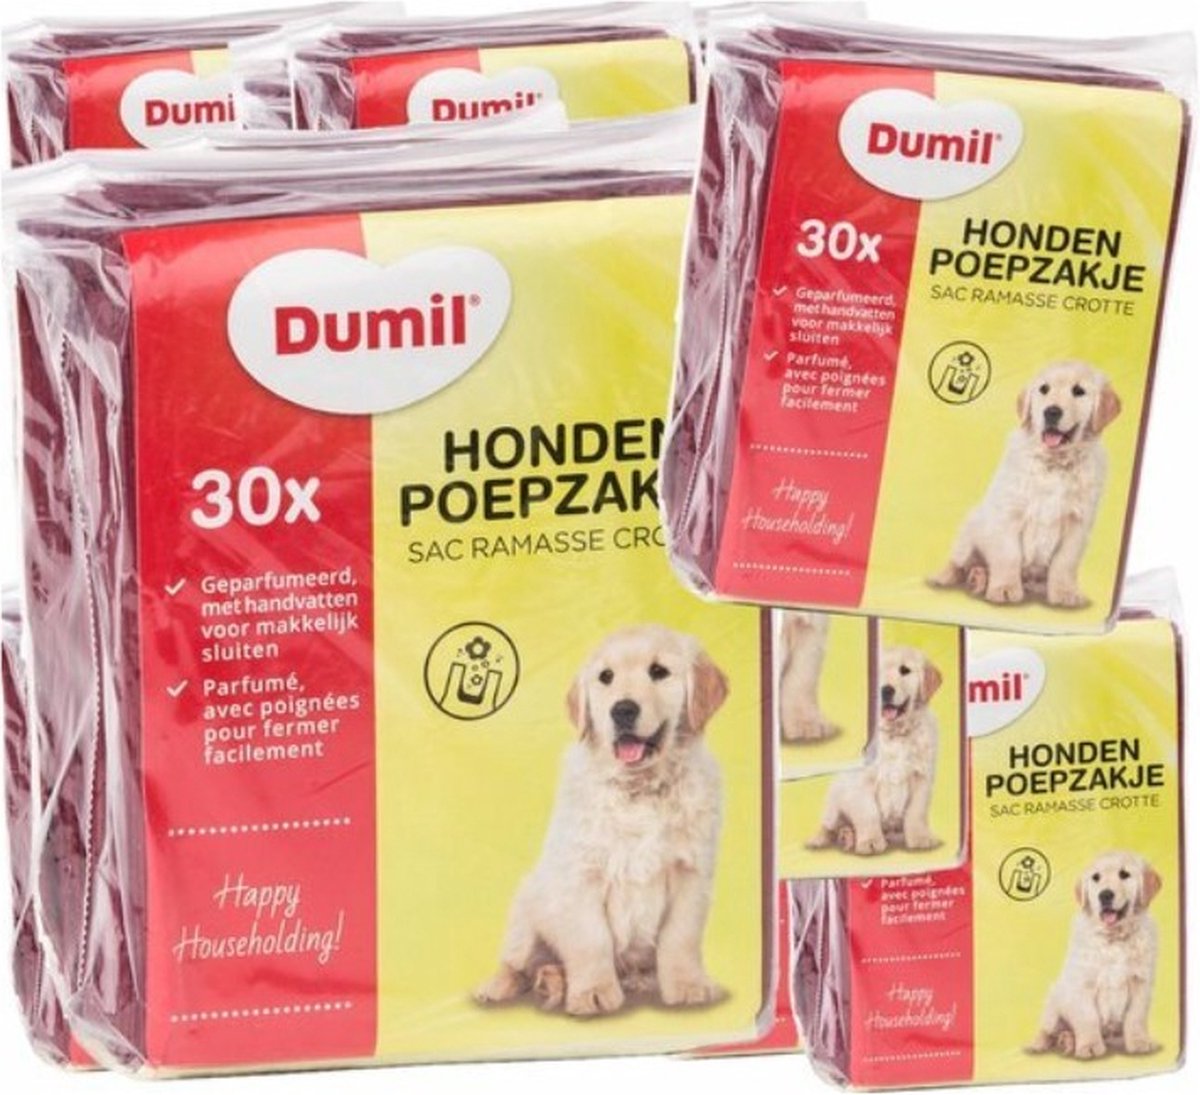 Dumil poepzakjes - hondenpoepzakjes - 24 x 30 stuks - 720 poepzakjes |  bol.com